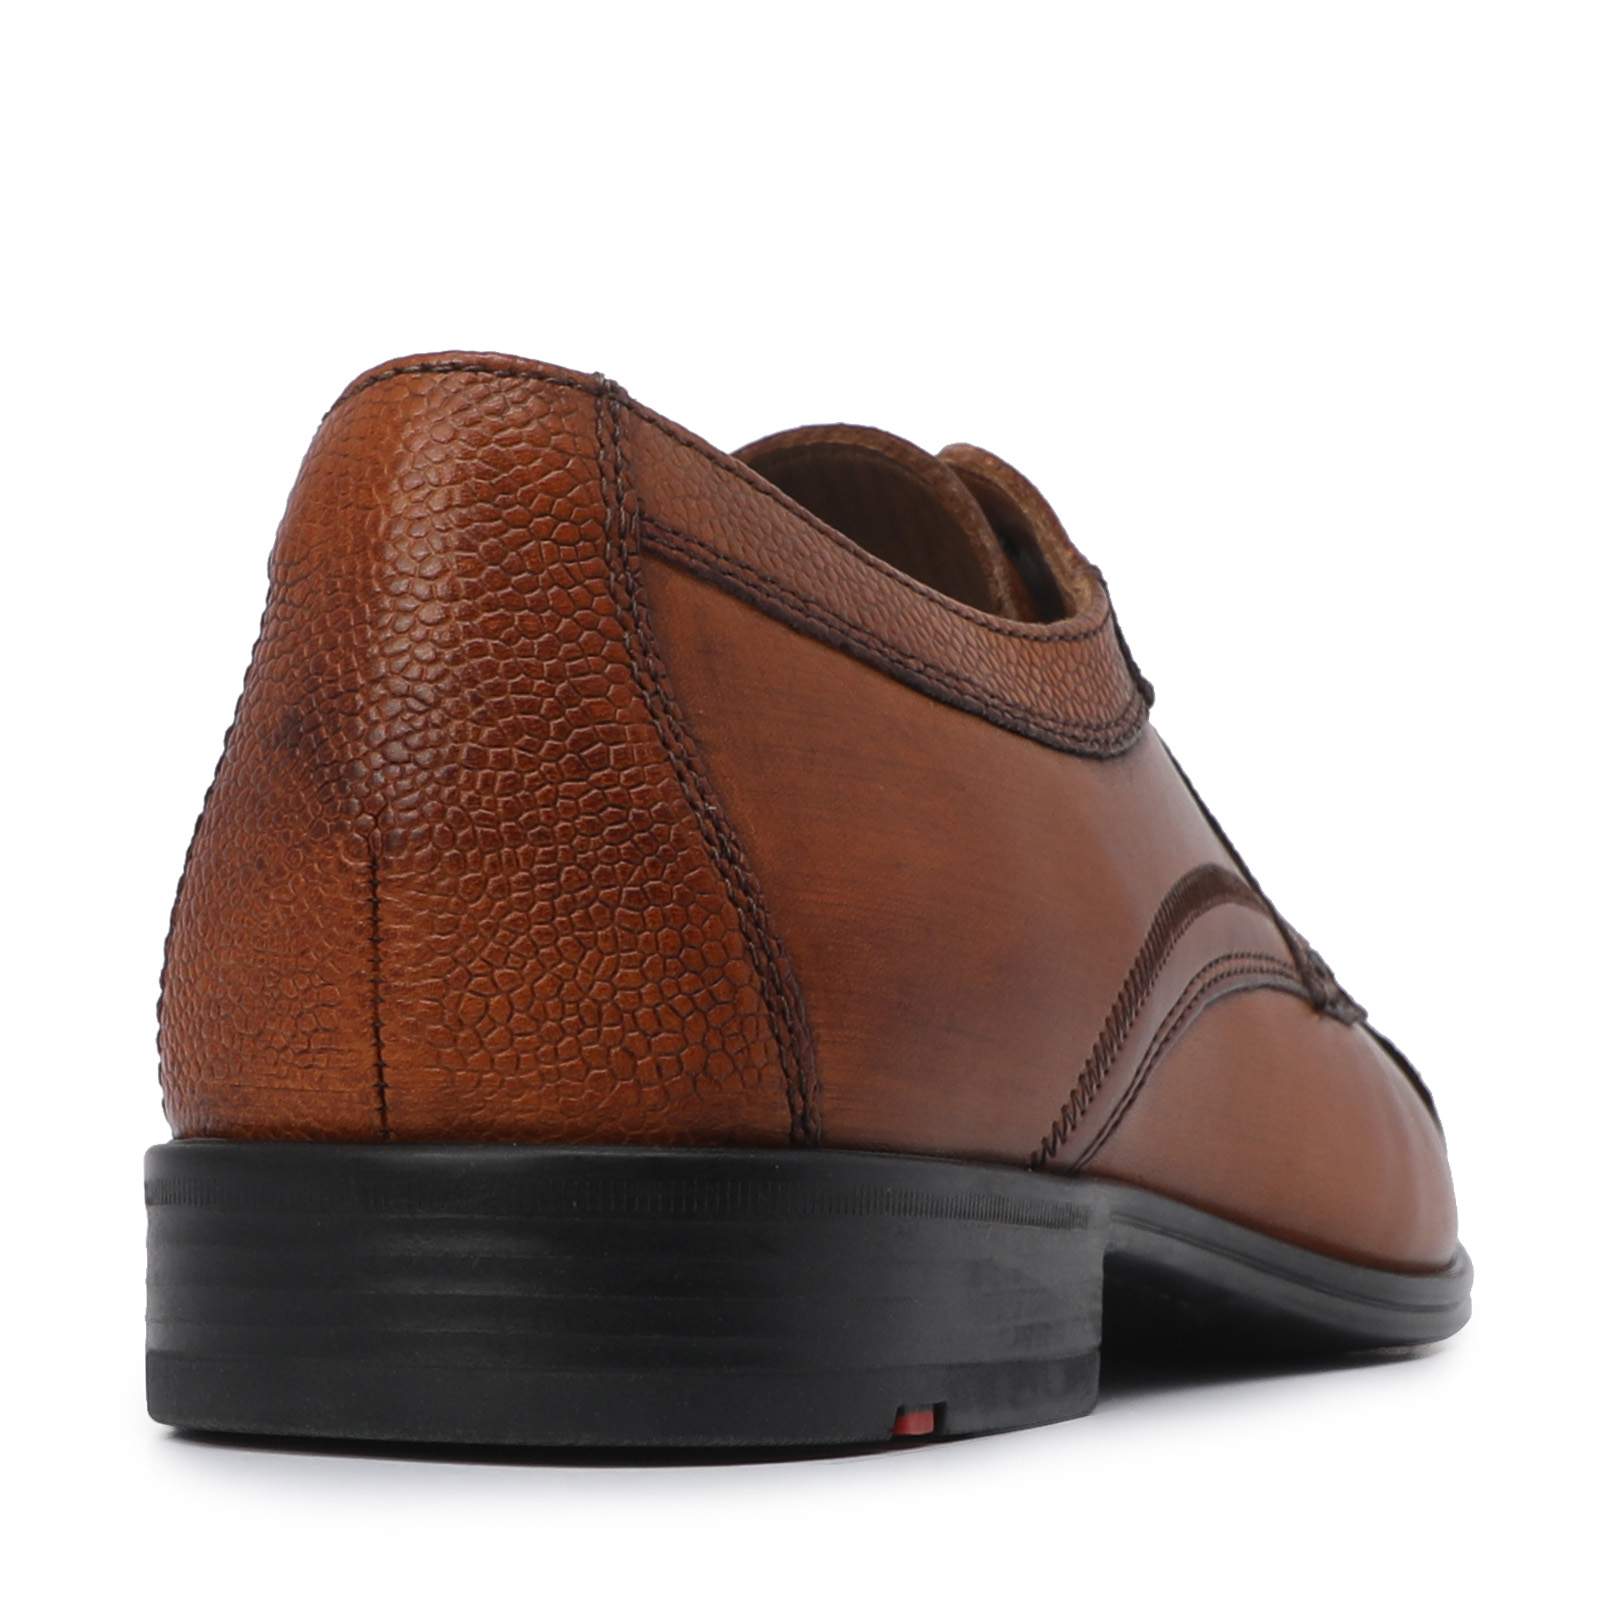 Туфли мужские LLOYD ORWIN коричневые 9.5 UK